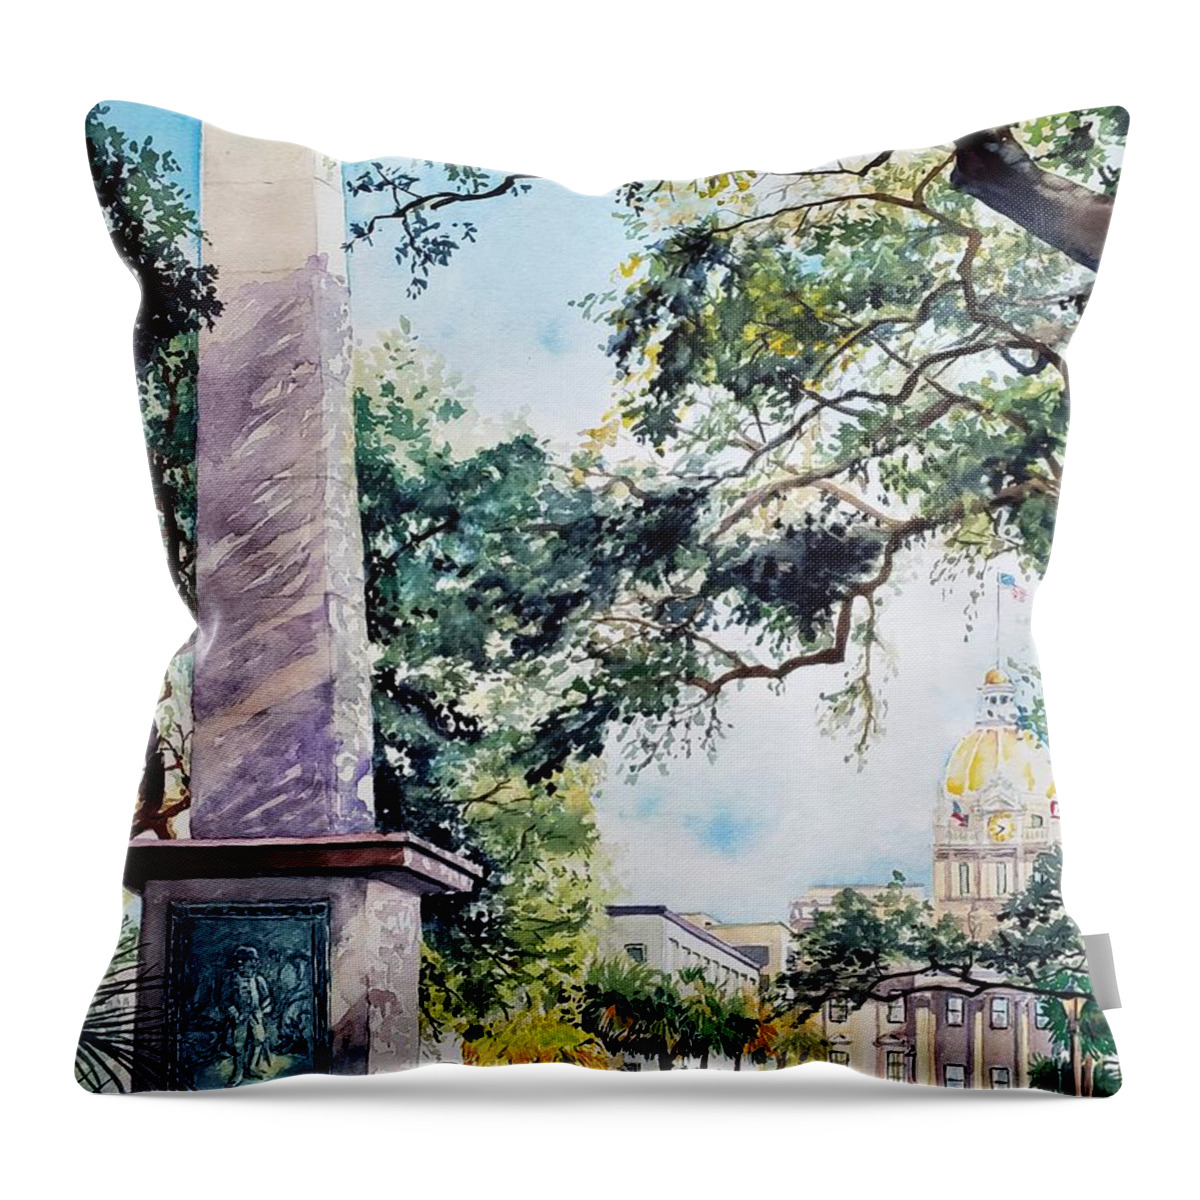 Georgia Throw Pillow featuring the painting Johnson Square, Savannah GA by Merana Cadorette